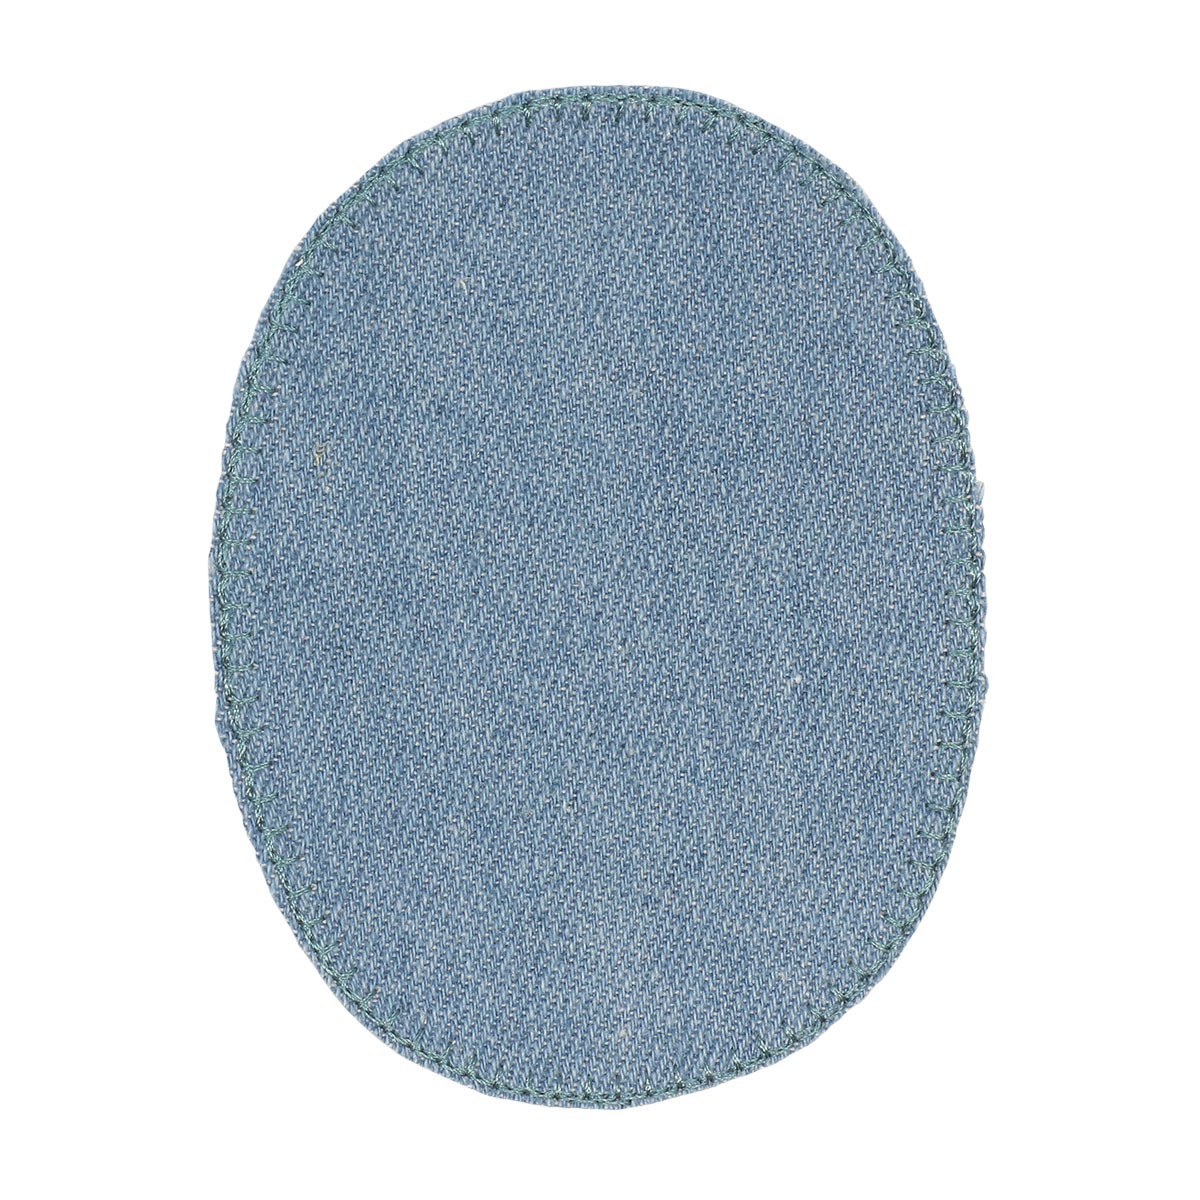 Заплатка Prym термоклеевая из джинсовой ткани деним для уплотнения ткани 8х11 см голубой 929295 - фото 3